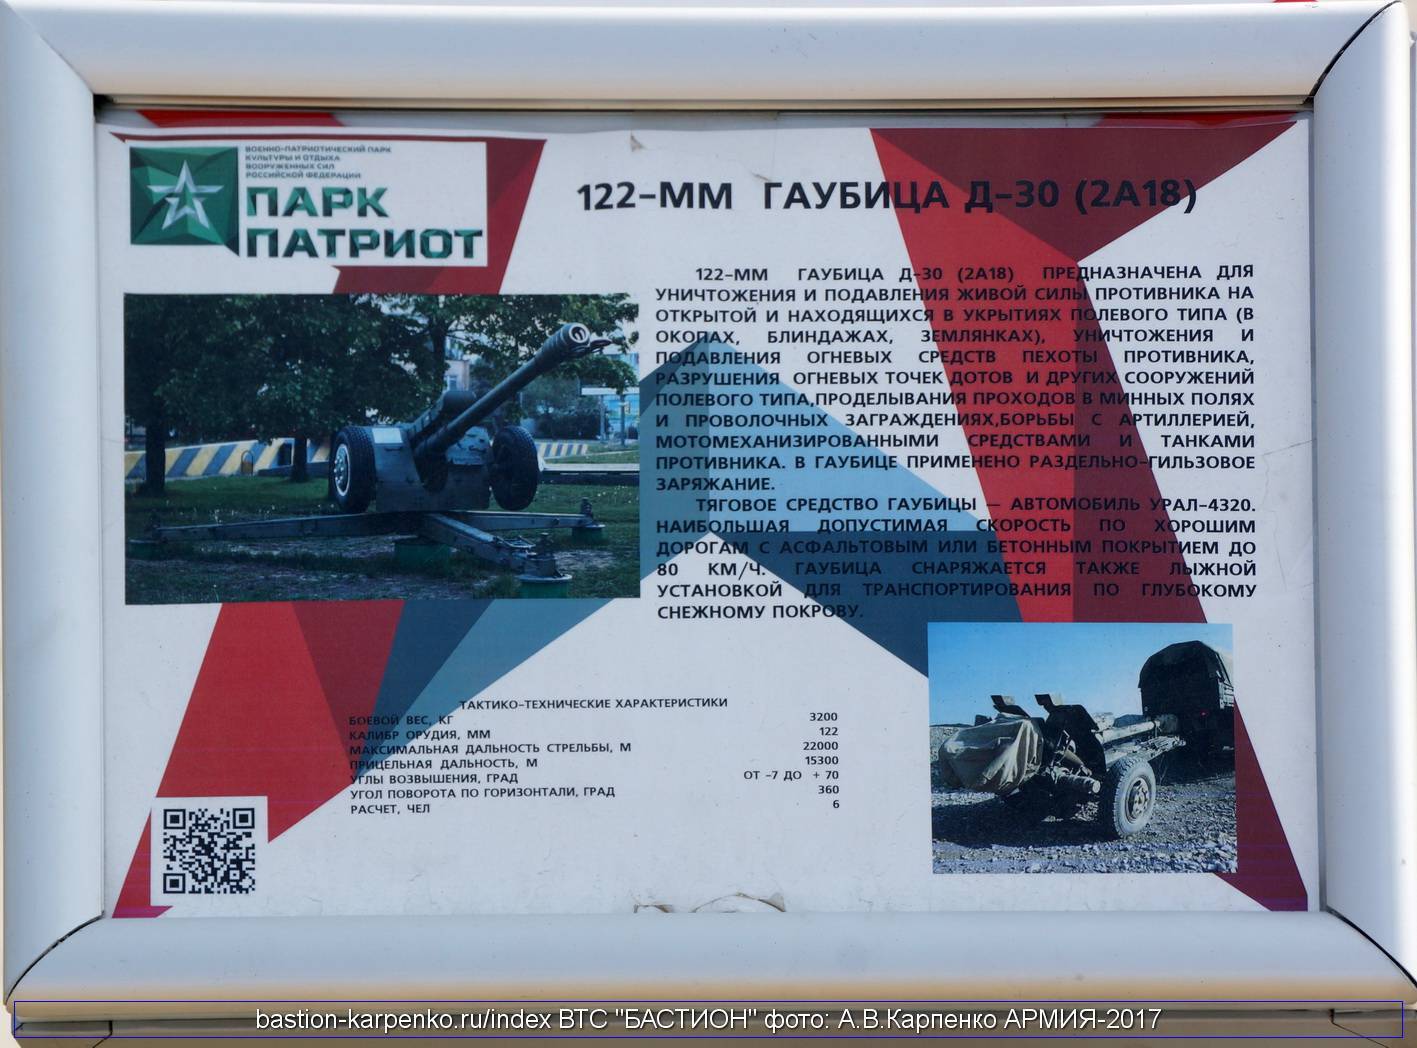 Гаубица д-30: фото, технические характеристики